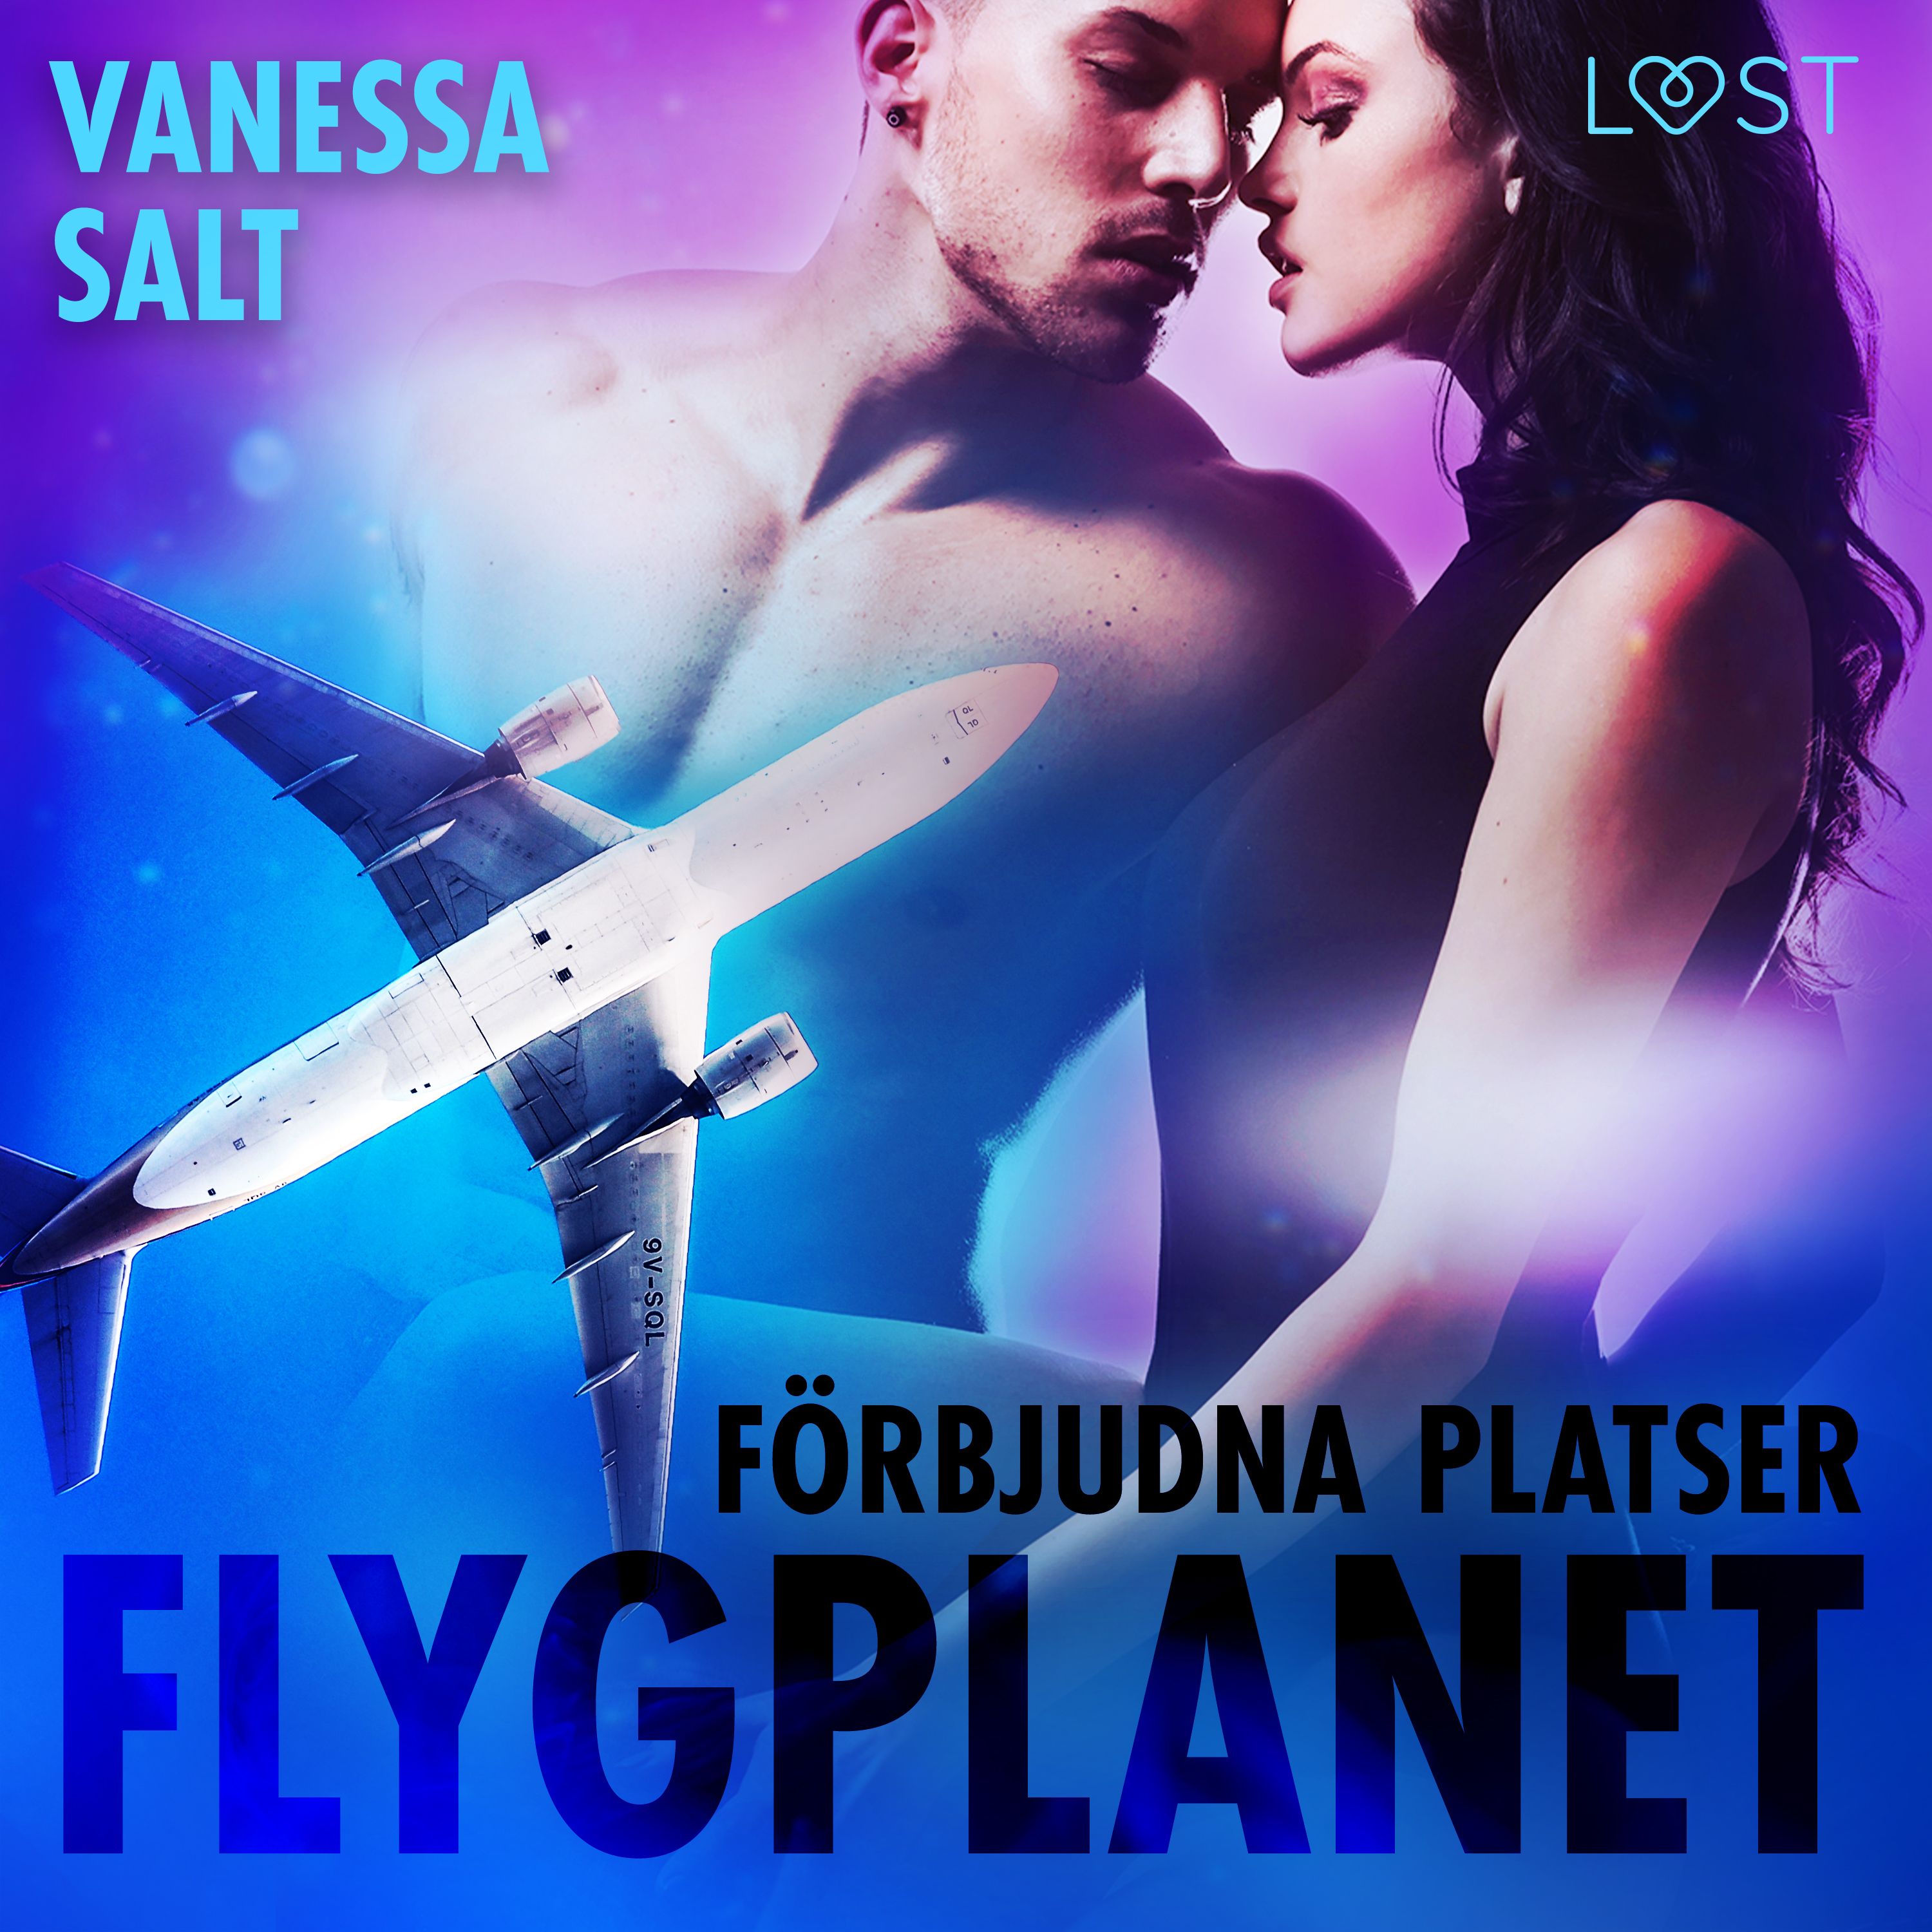 Förbjudna platser: Flygplanet, ljudbok av Vanessa Salt